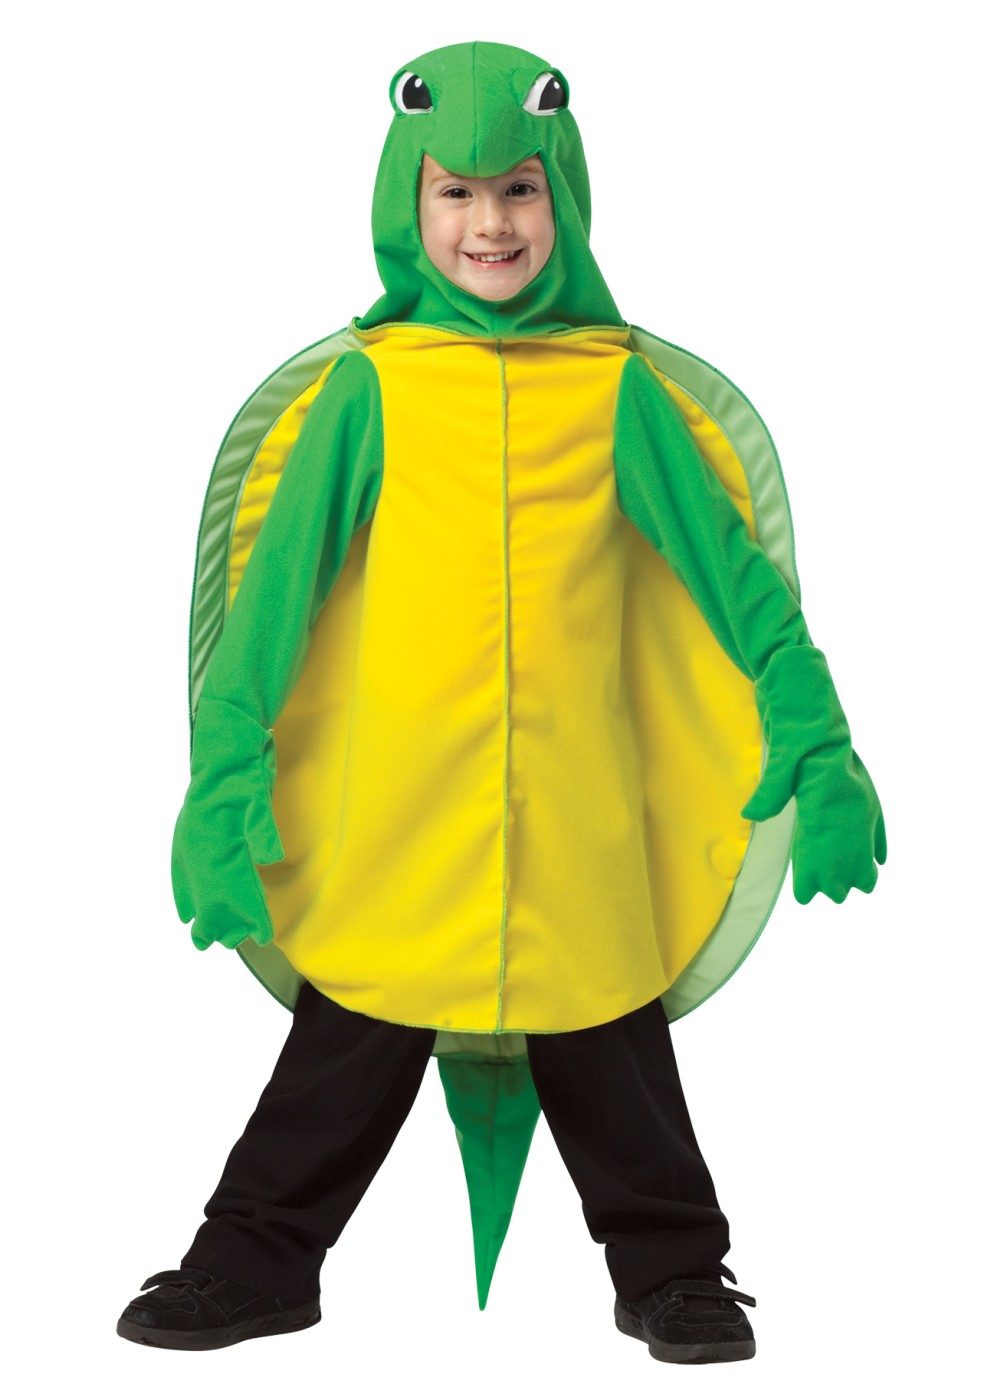 Child Turtle Costume